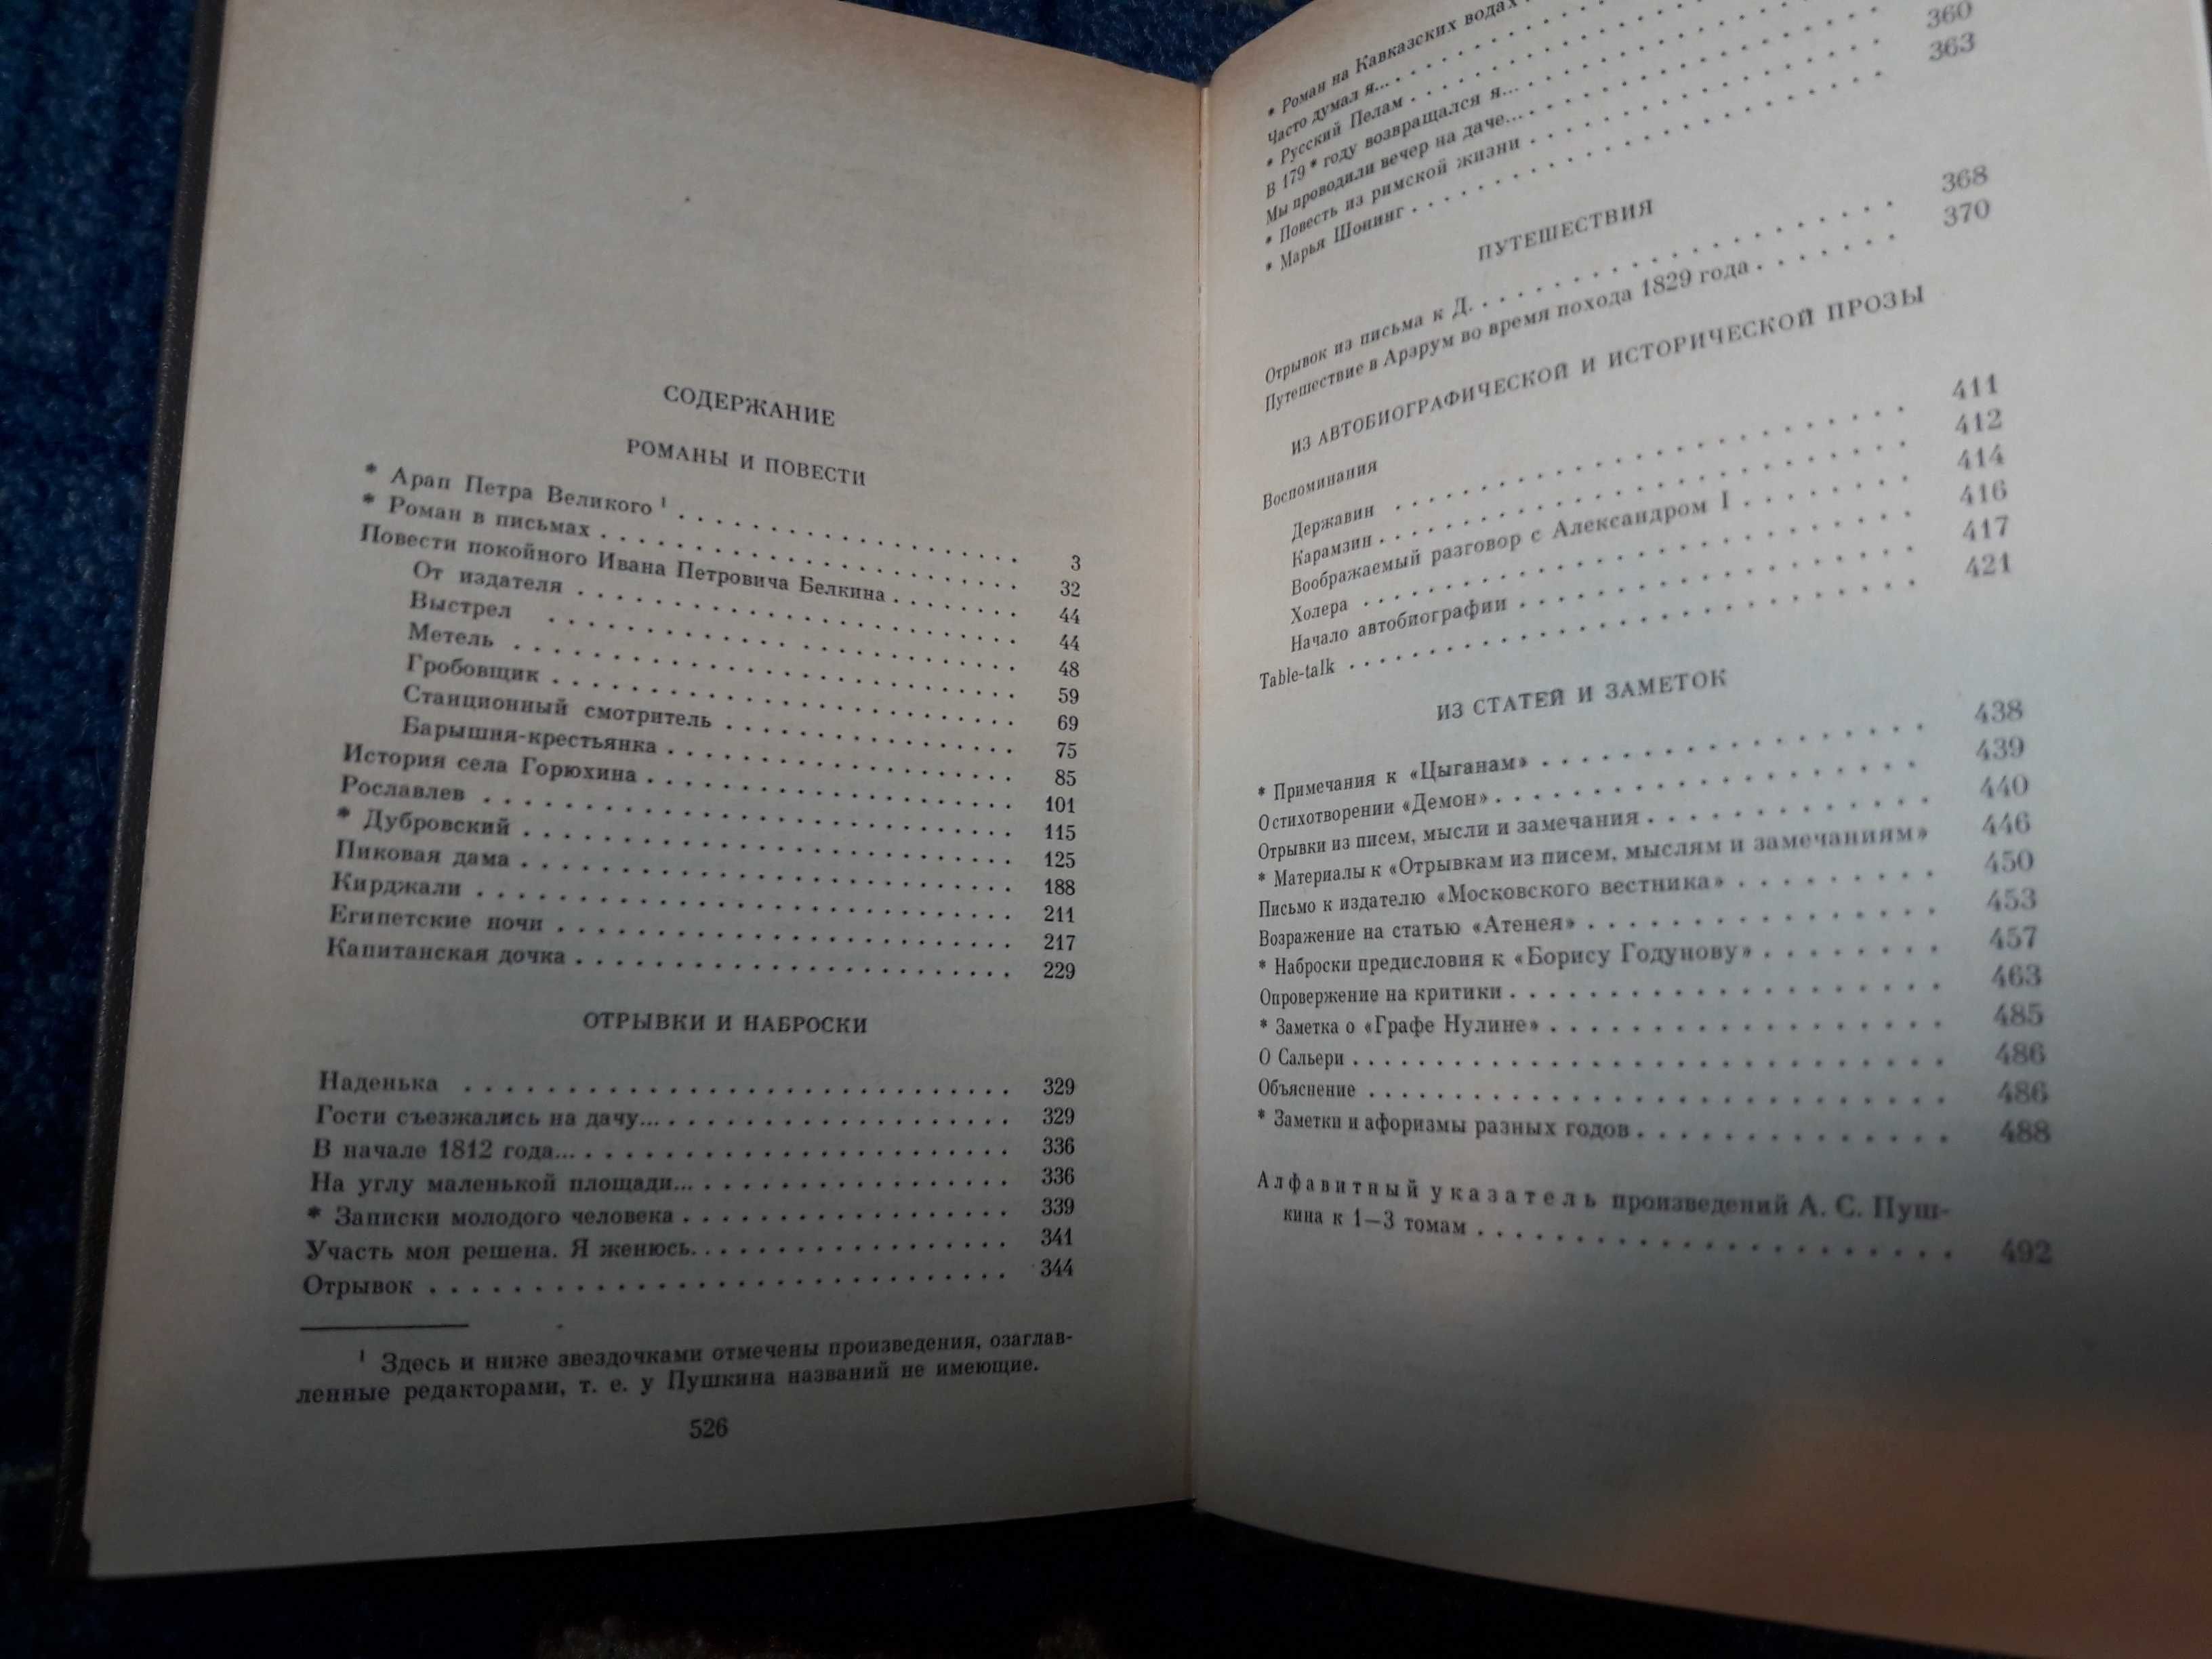 А.С.Пушкин в 3 томах,И.А.Гончаров в 6 томах